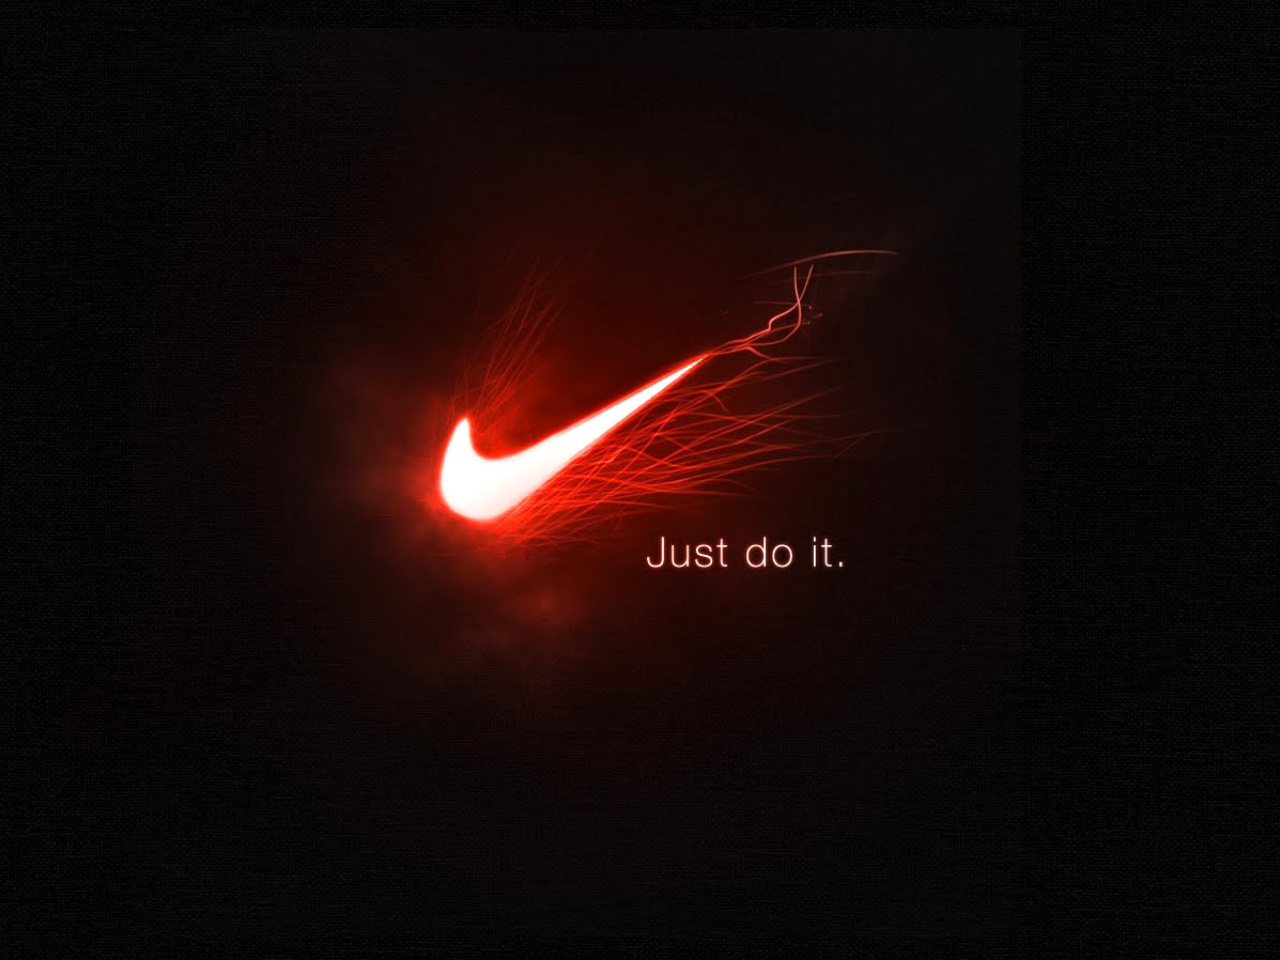 Nike Advertising Slogan Just Do It screenshot #1 1280x960